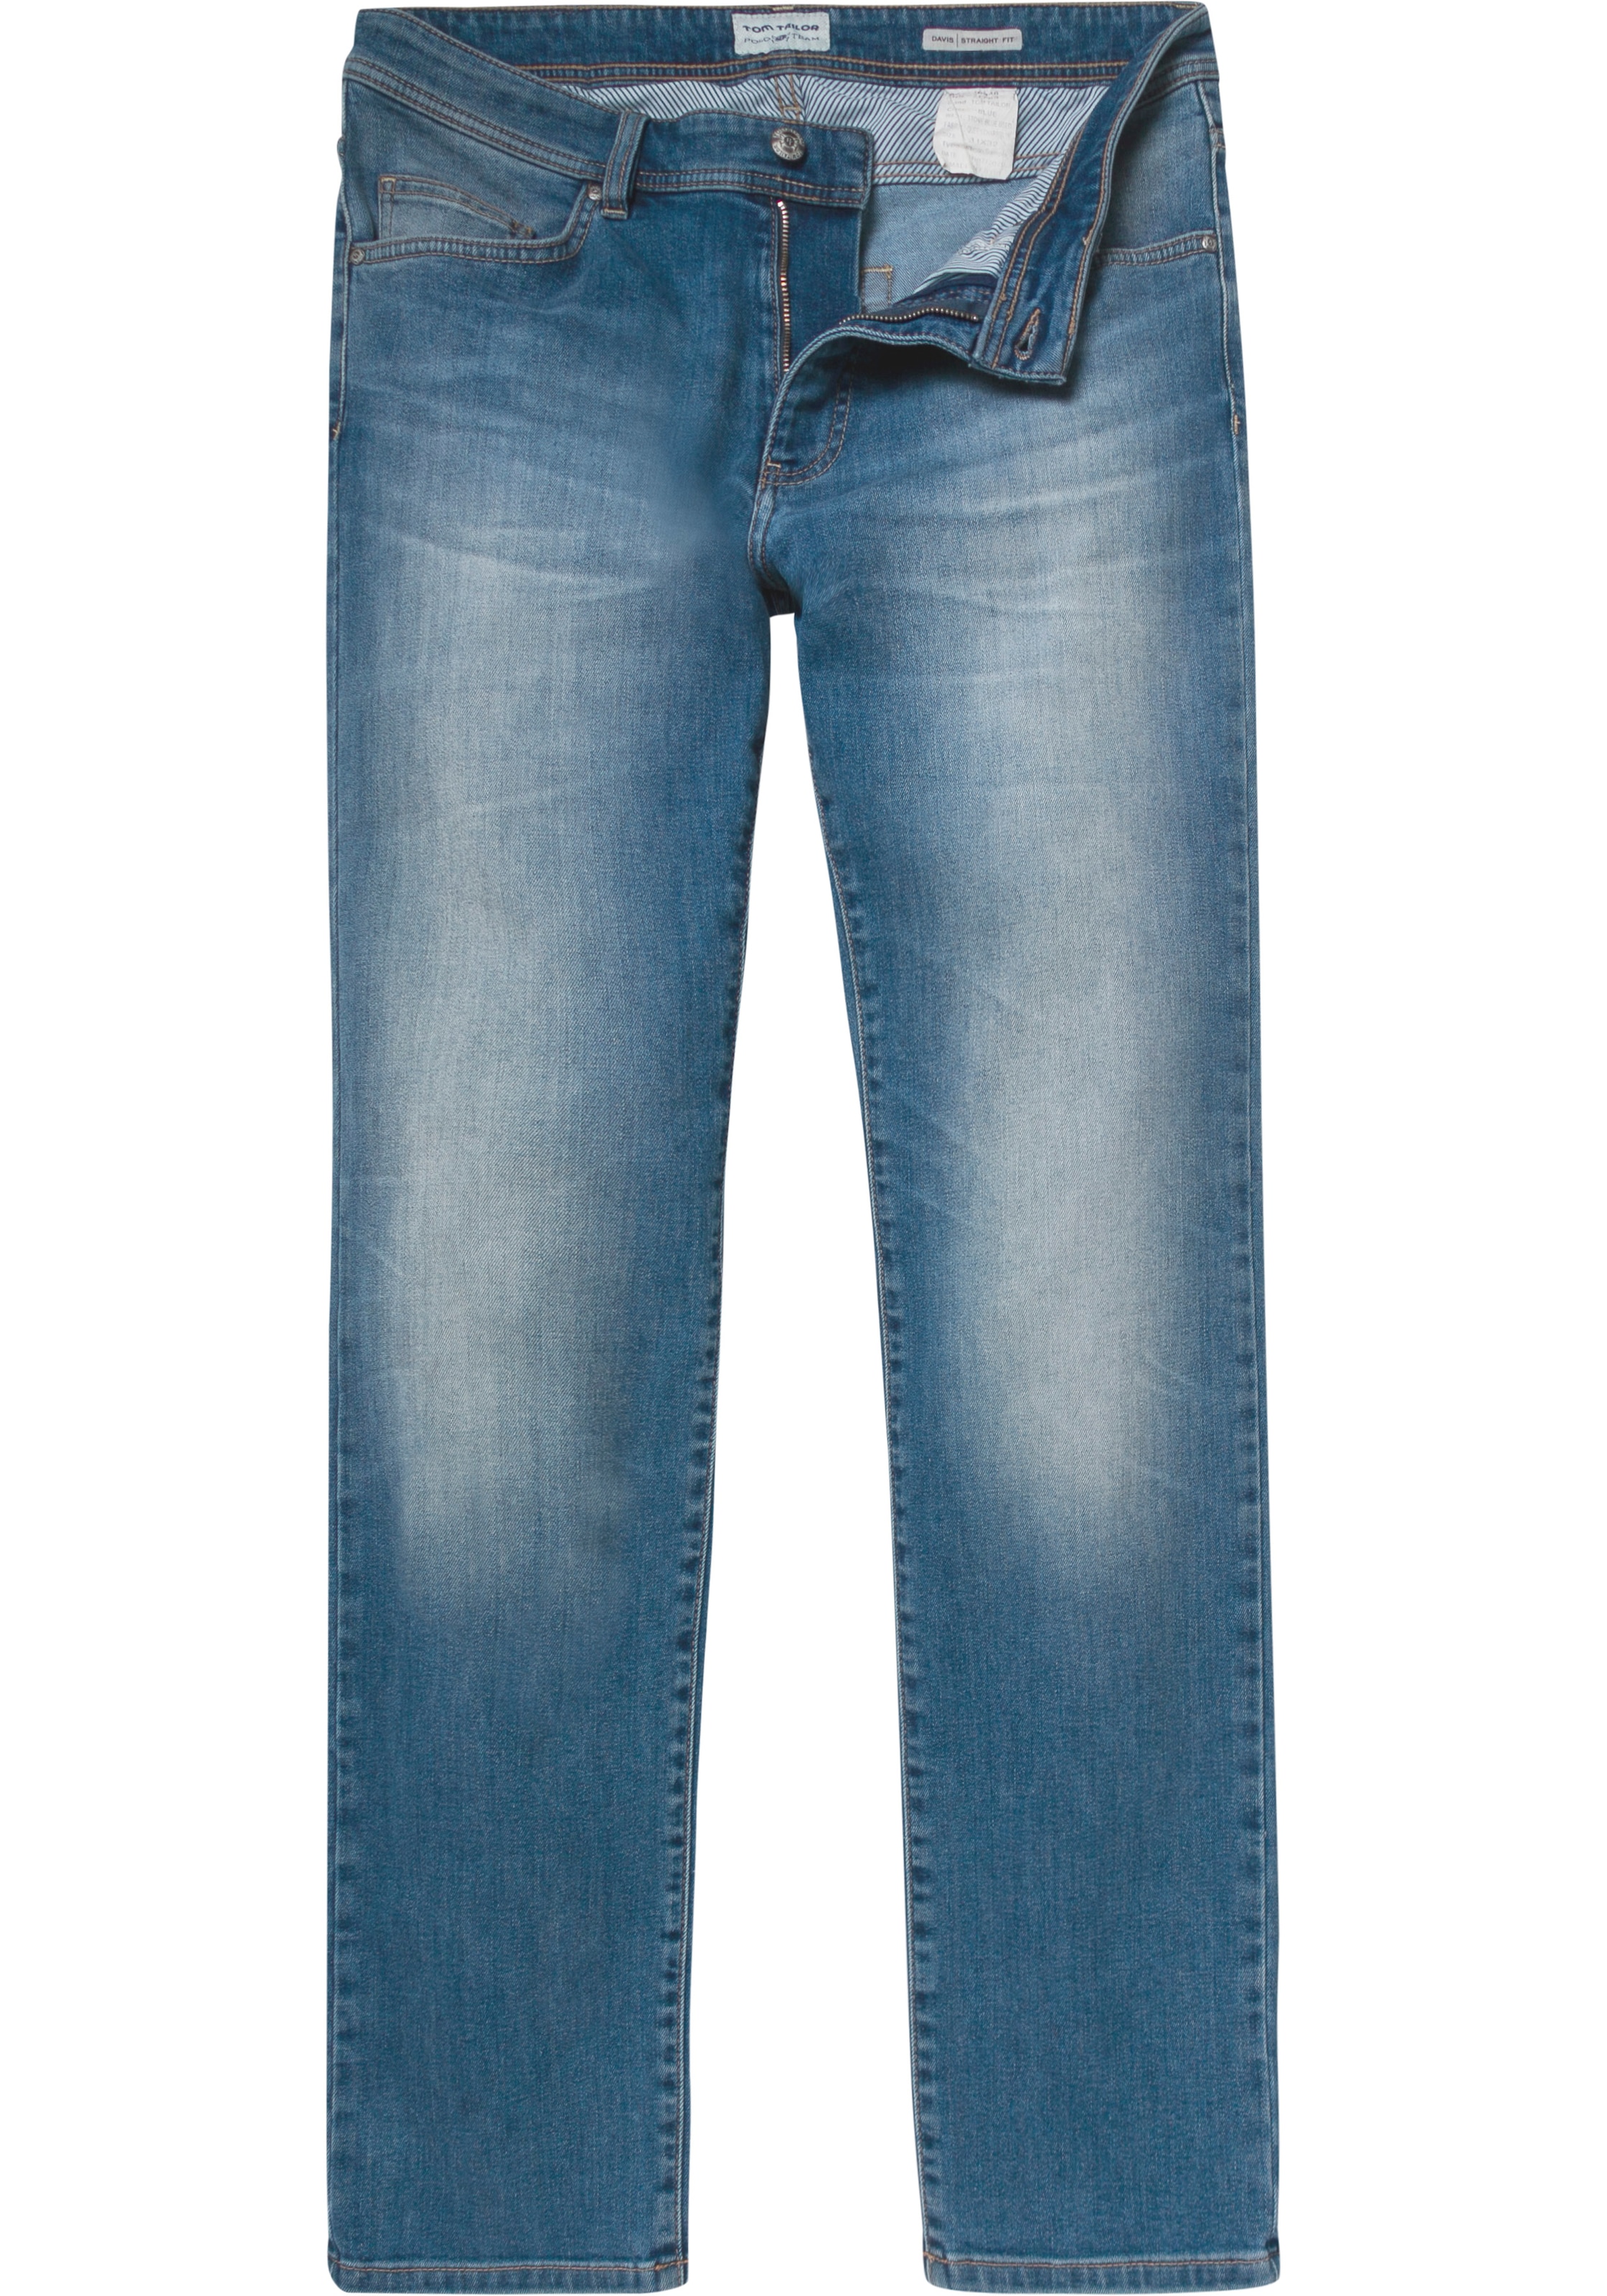 Waschung bei used OTTO Team Polo kaufen mit 5-Pocket-Jeans TAILOR online TOM »DAVIS«,